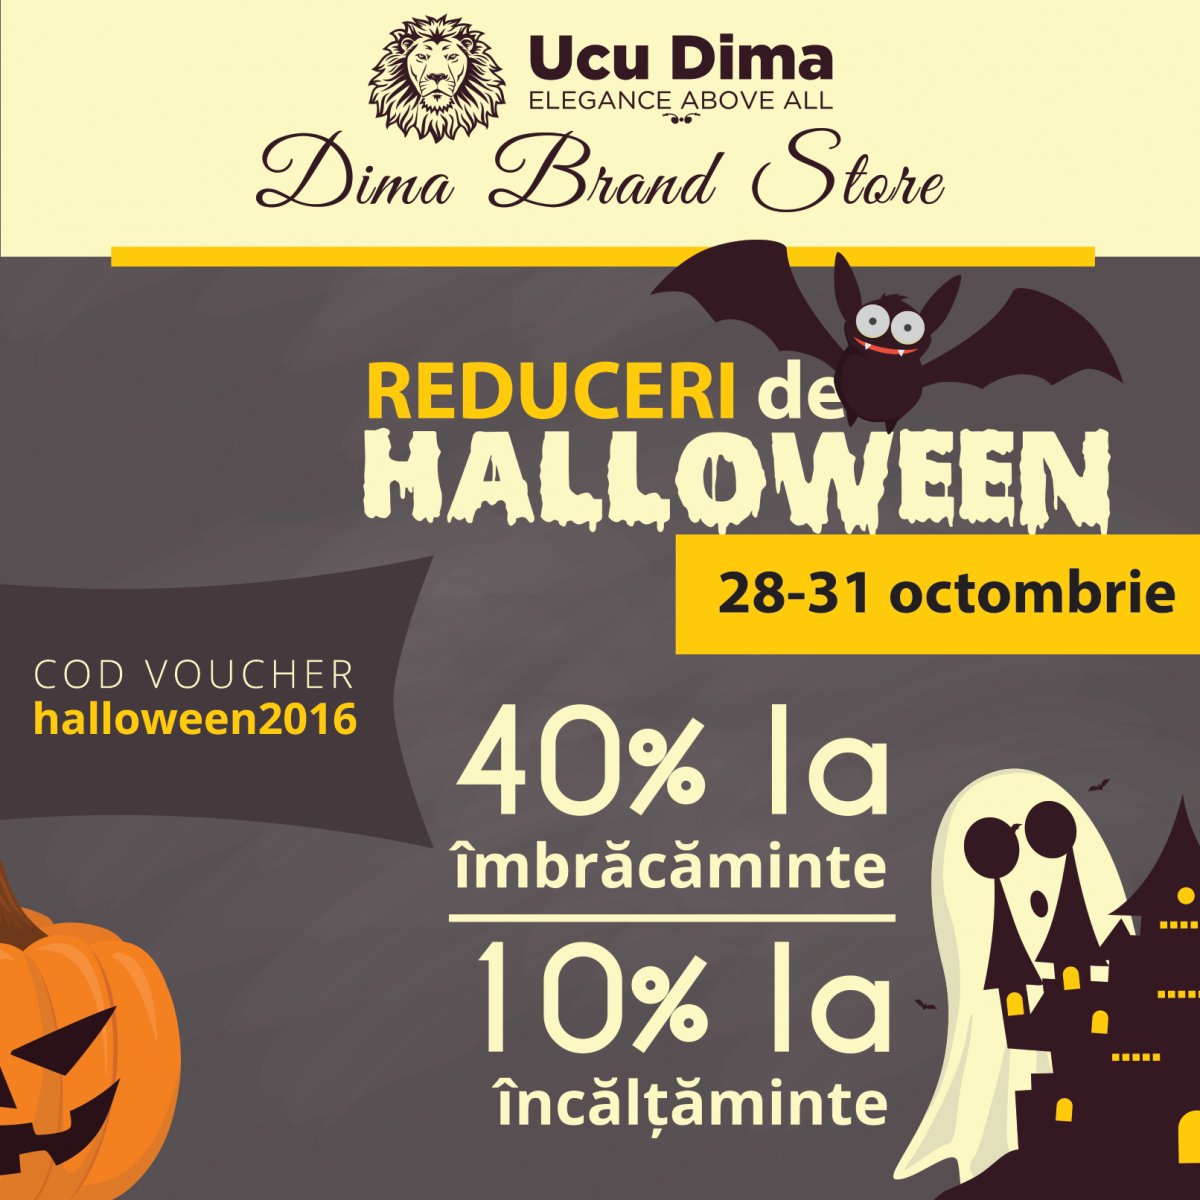 Vedeți ce surprize (de Halloween) v-a pregătit Ucu Dima în acest weekend